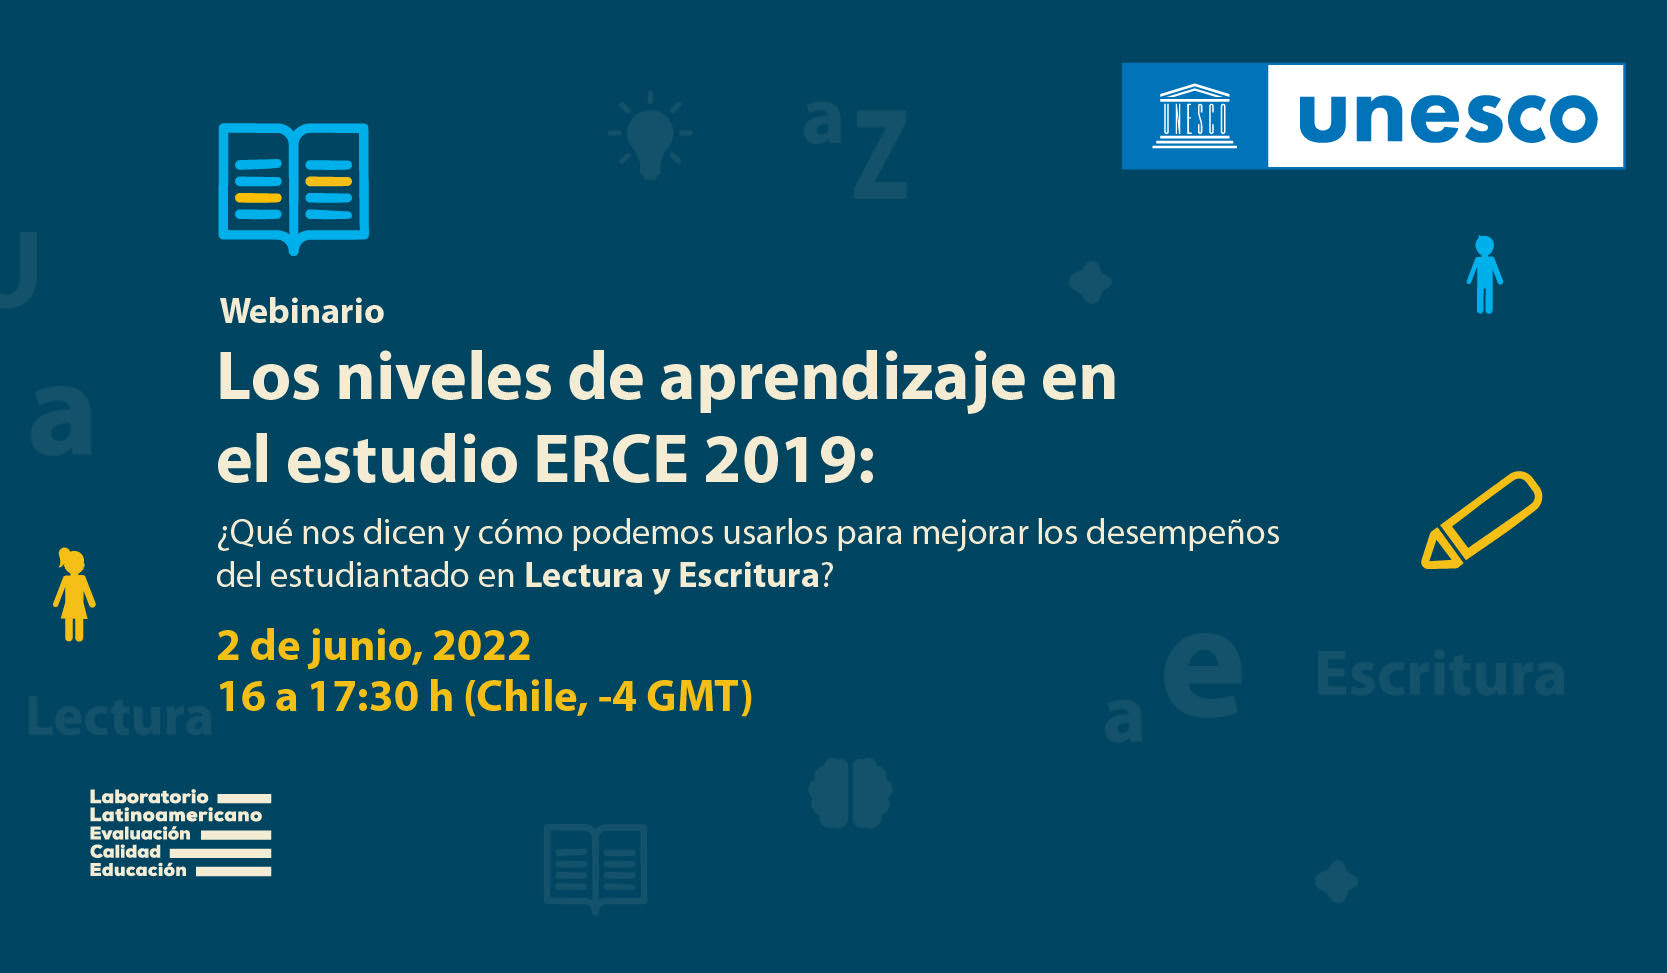 Unesco presentará documentos de política basados en resultados en niveles de aprendizaje de cuatro áreas del conocimiento  del  ERCE 2019